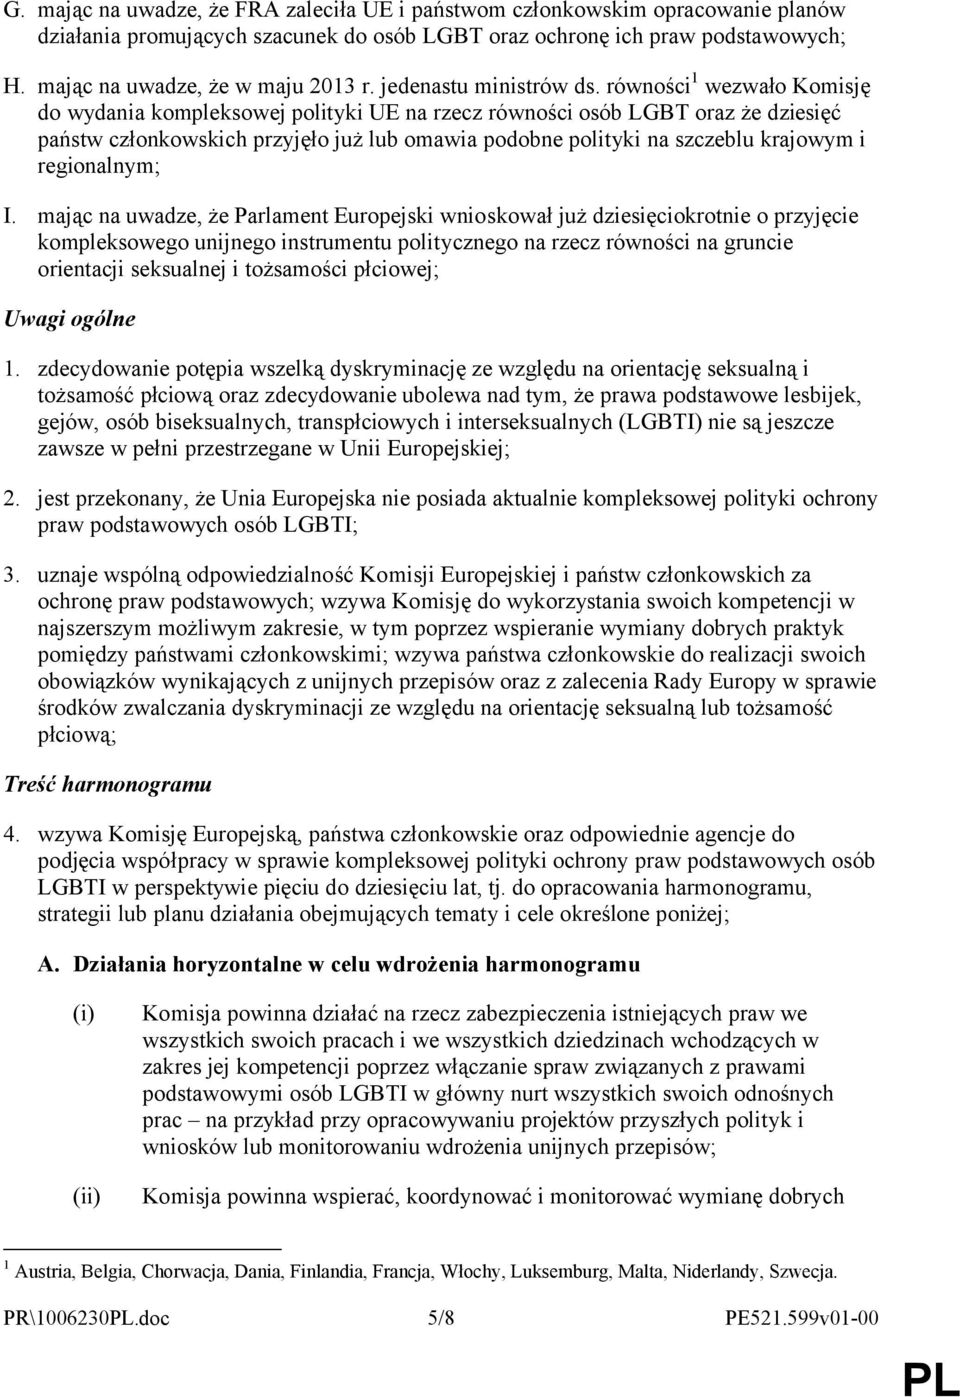 równości 1 wezwało Komisję do wydania kompleksowej polityki UE na rzecz równości osób LGBT oraz że dziesięć państw członkowskich przyjęło już lub omawia podobne polityki na szczeblu krajowym i